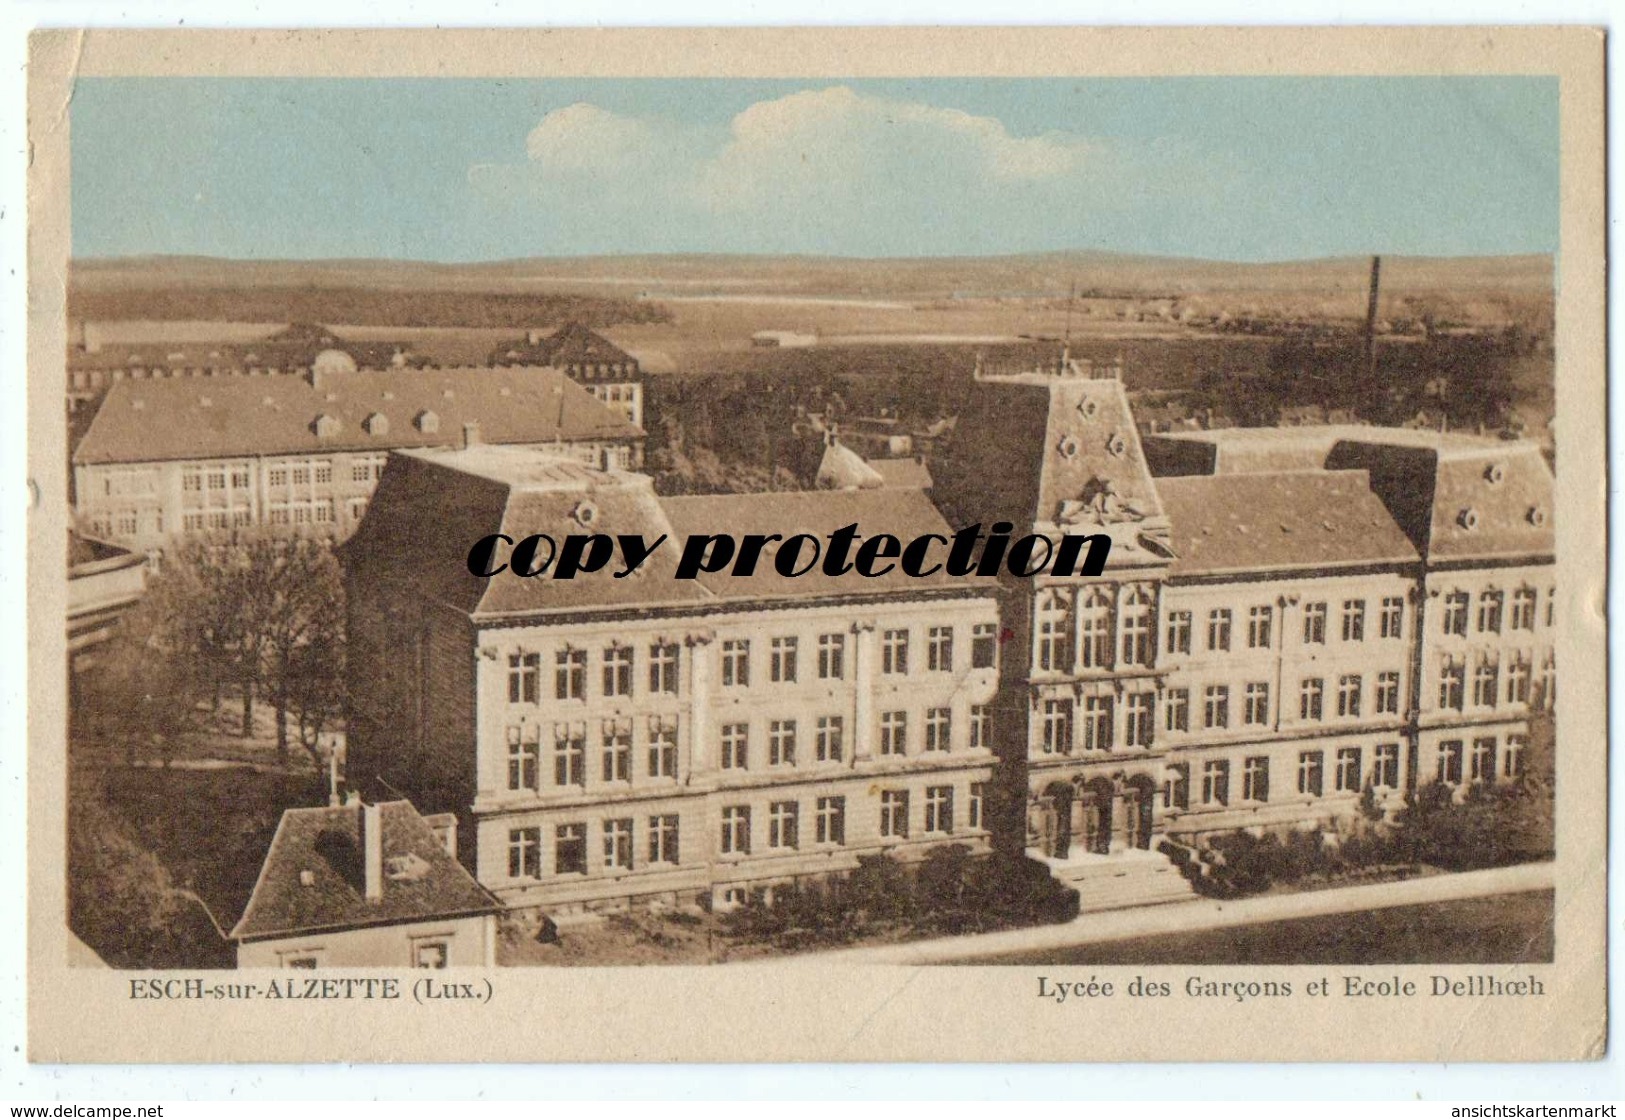 Esch Sur Alzette Luxembourg, Lycée Des Garcons Et Ecole Dellhoeh - Esch-Alzette